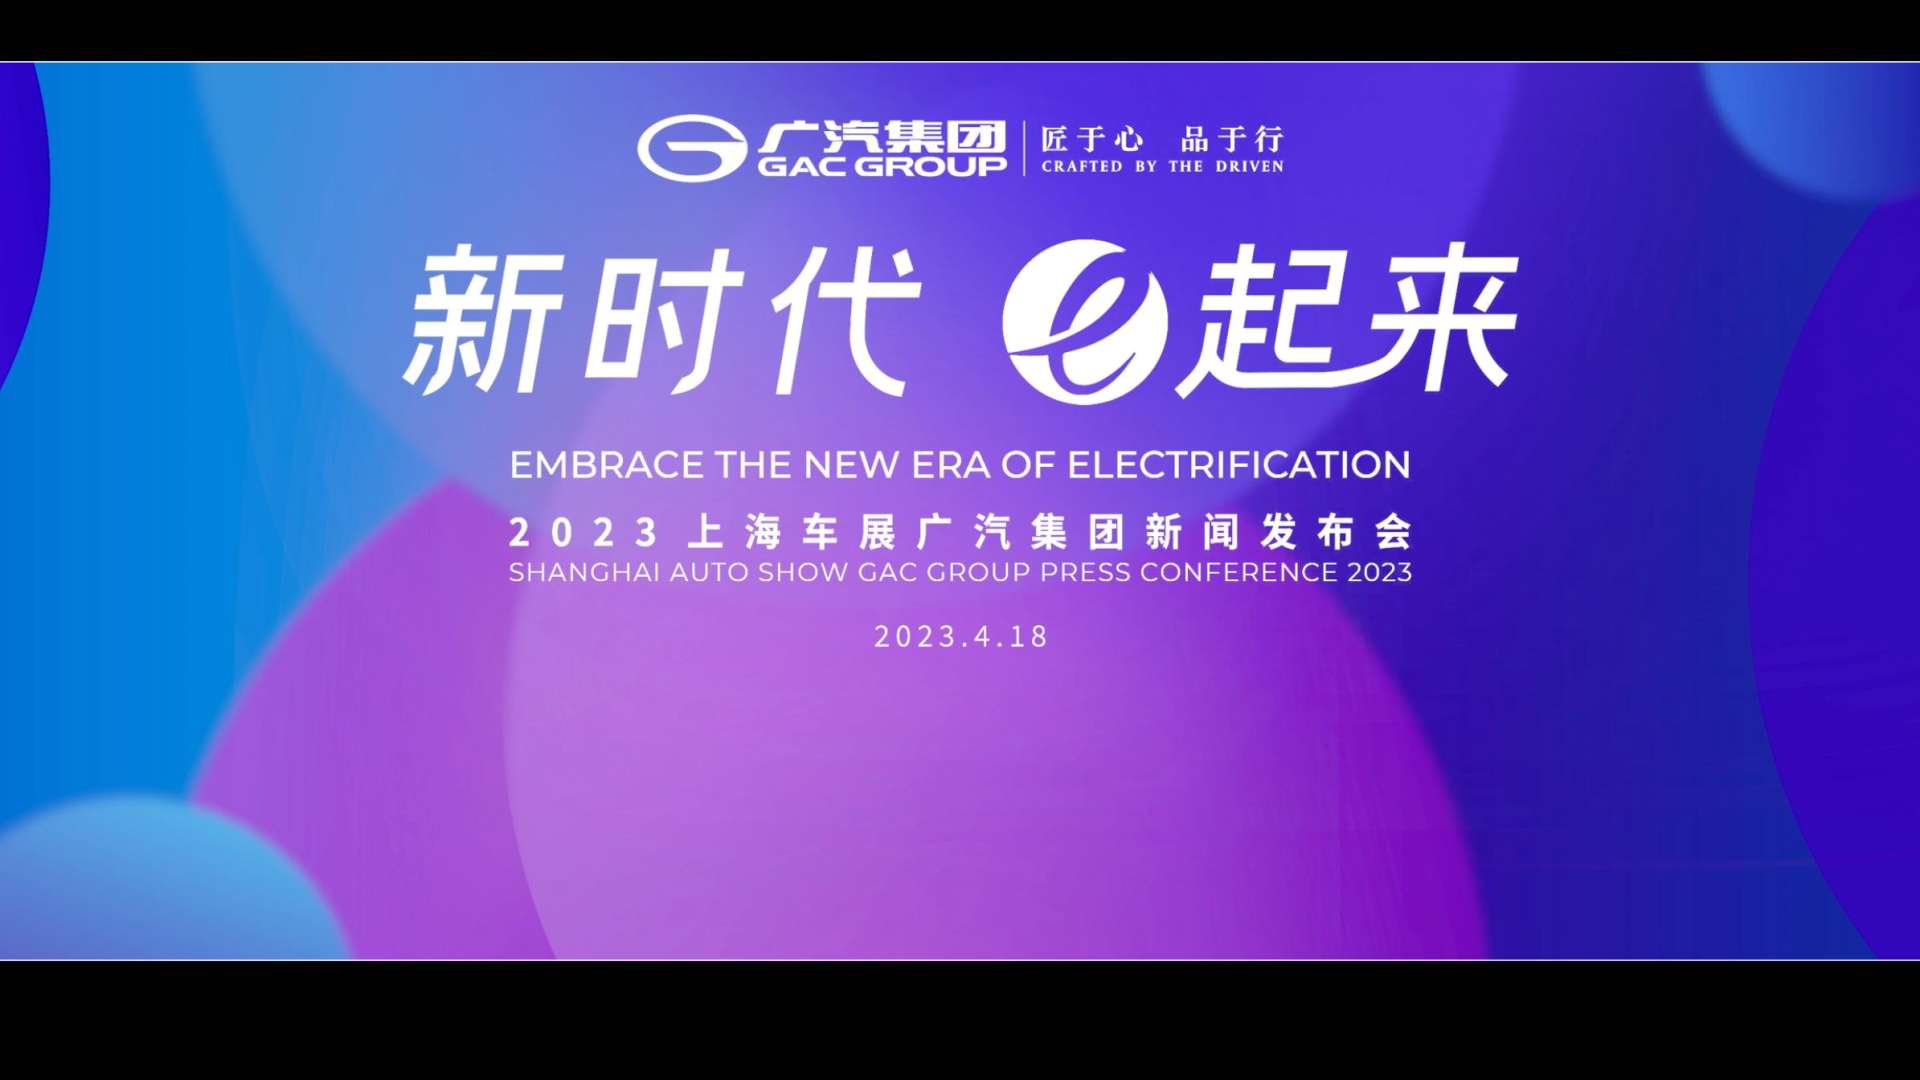 2023上海车展广汽集团发布会开场视频